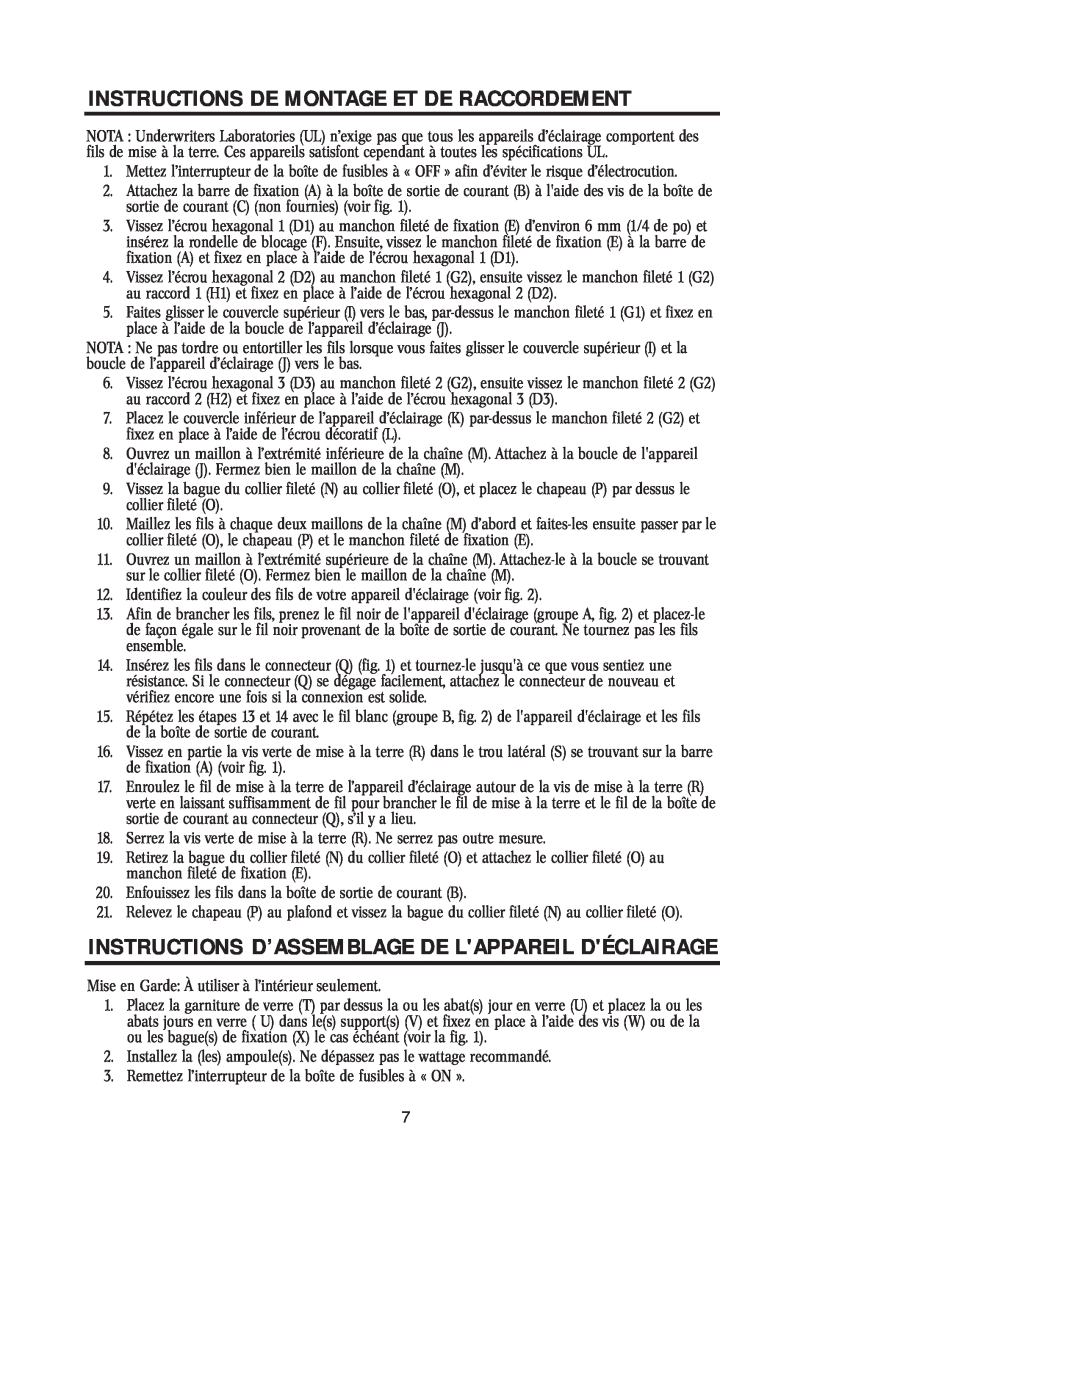 Westinghouse 31705, W-194 Instructions D’Assemblage De Lappareil Déclairage, Instructions De Montage Et De Raccordement 